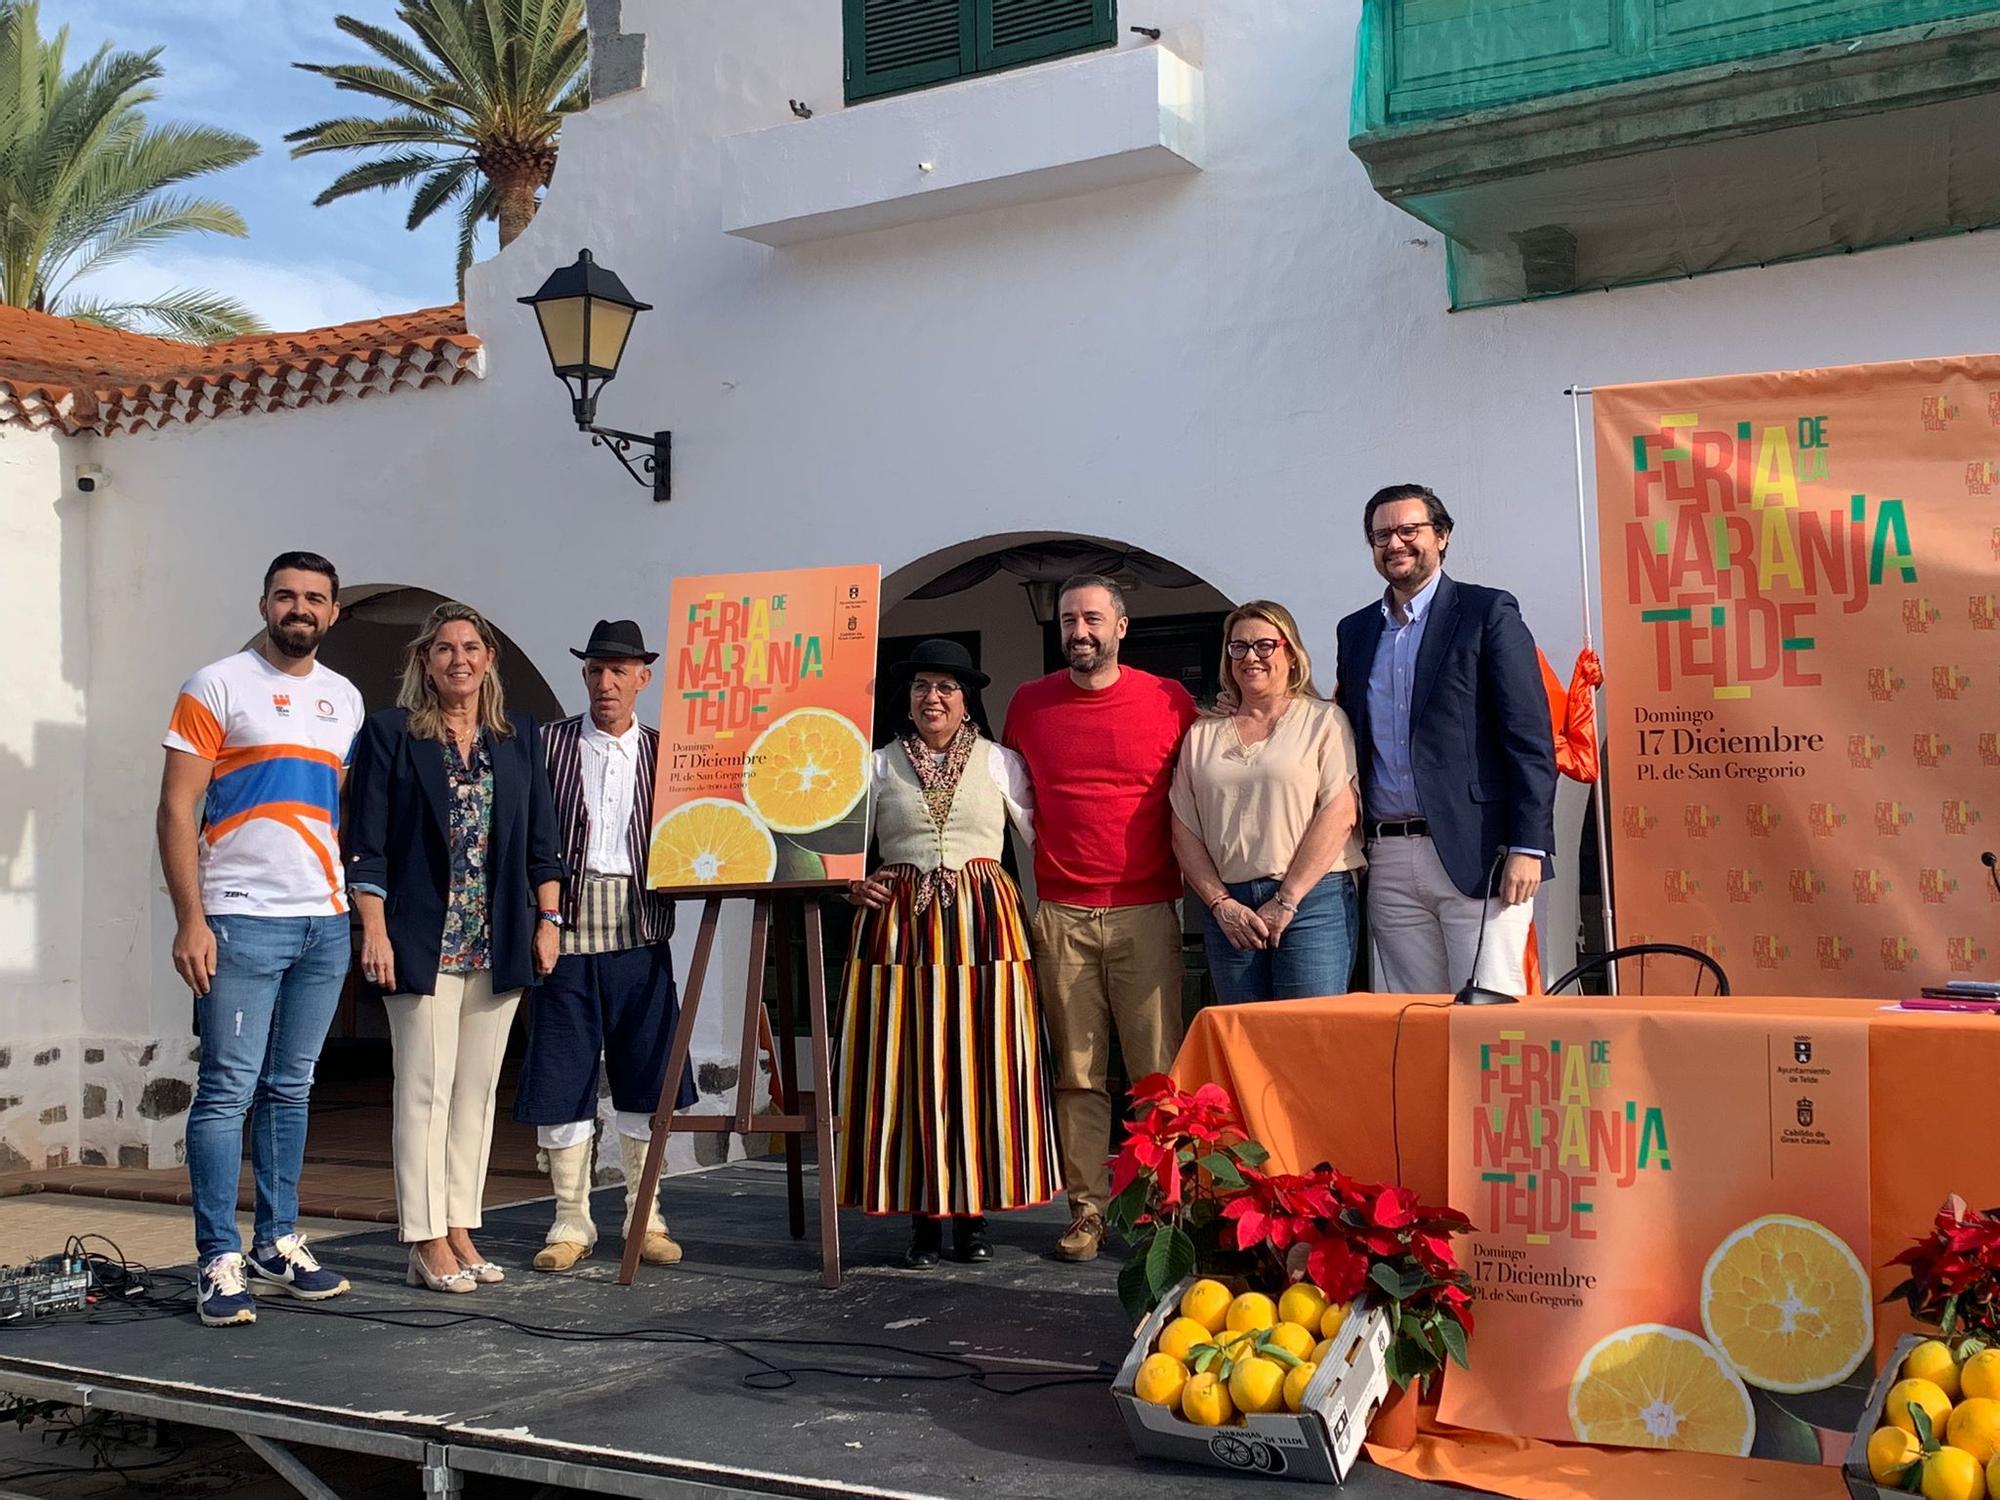 Presentación de una nueva edición de la Feria de la Naranja en Telde